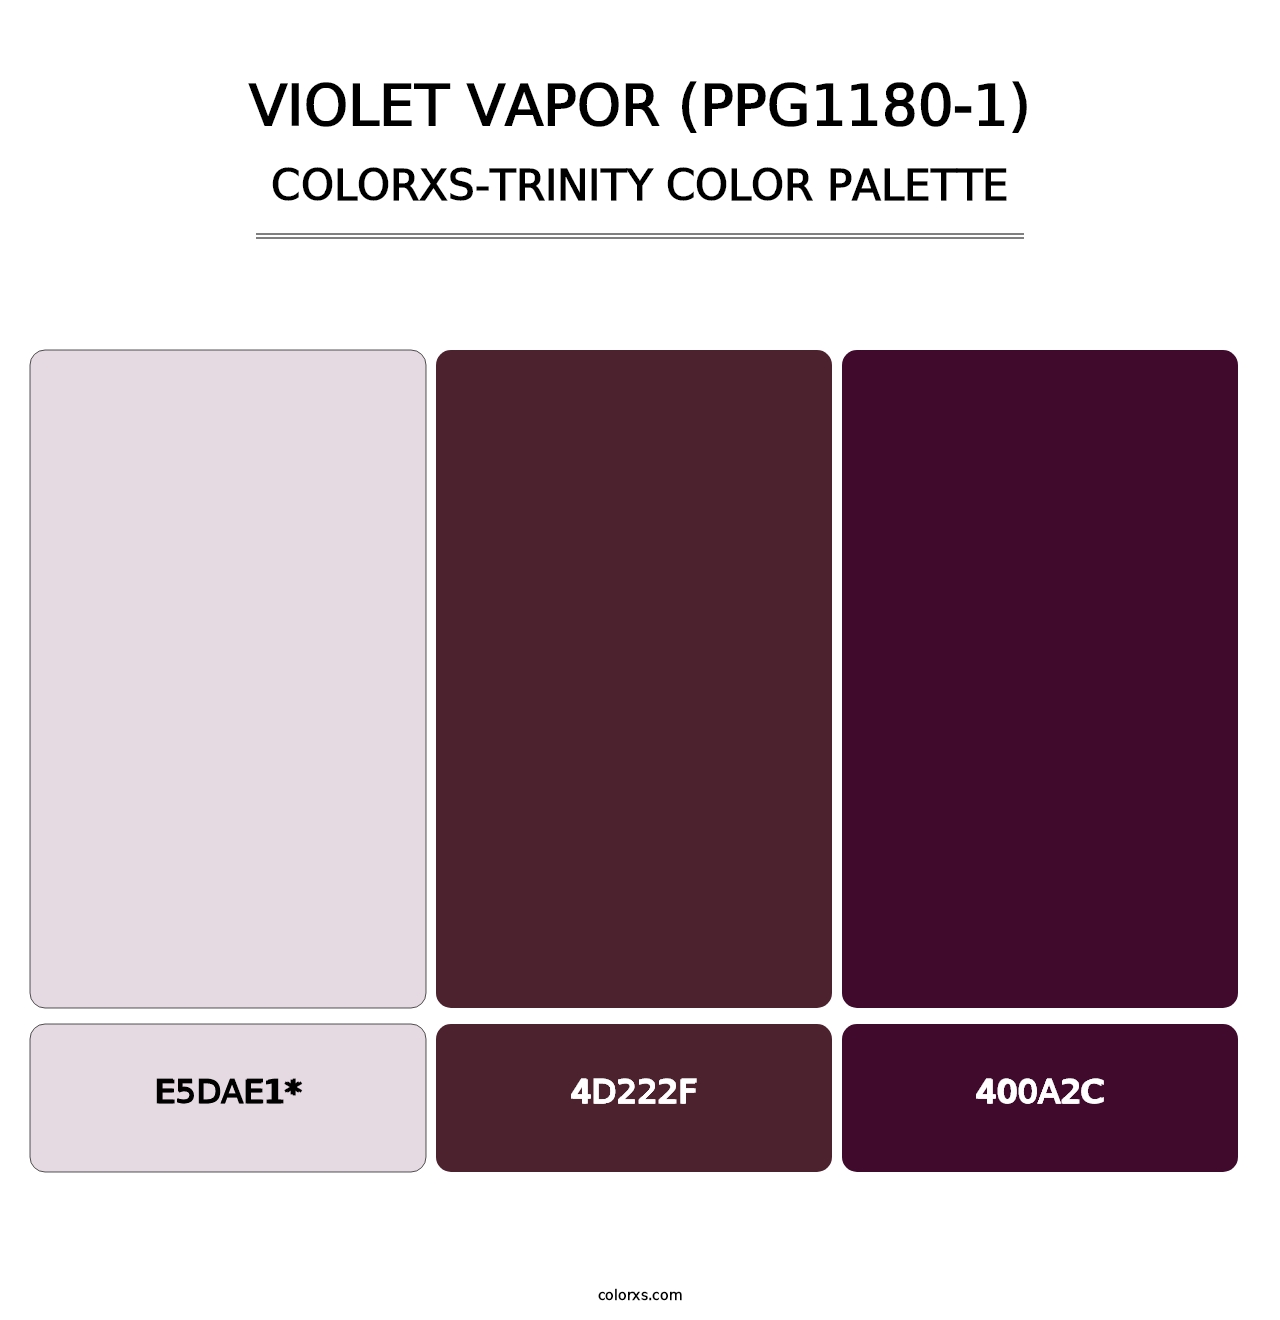 Violet Vapor (PPG1180-1) - Colorxs Trinity Palette